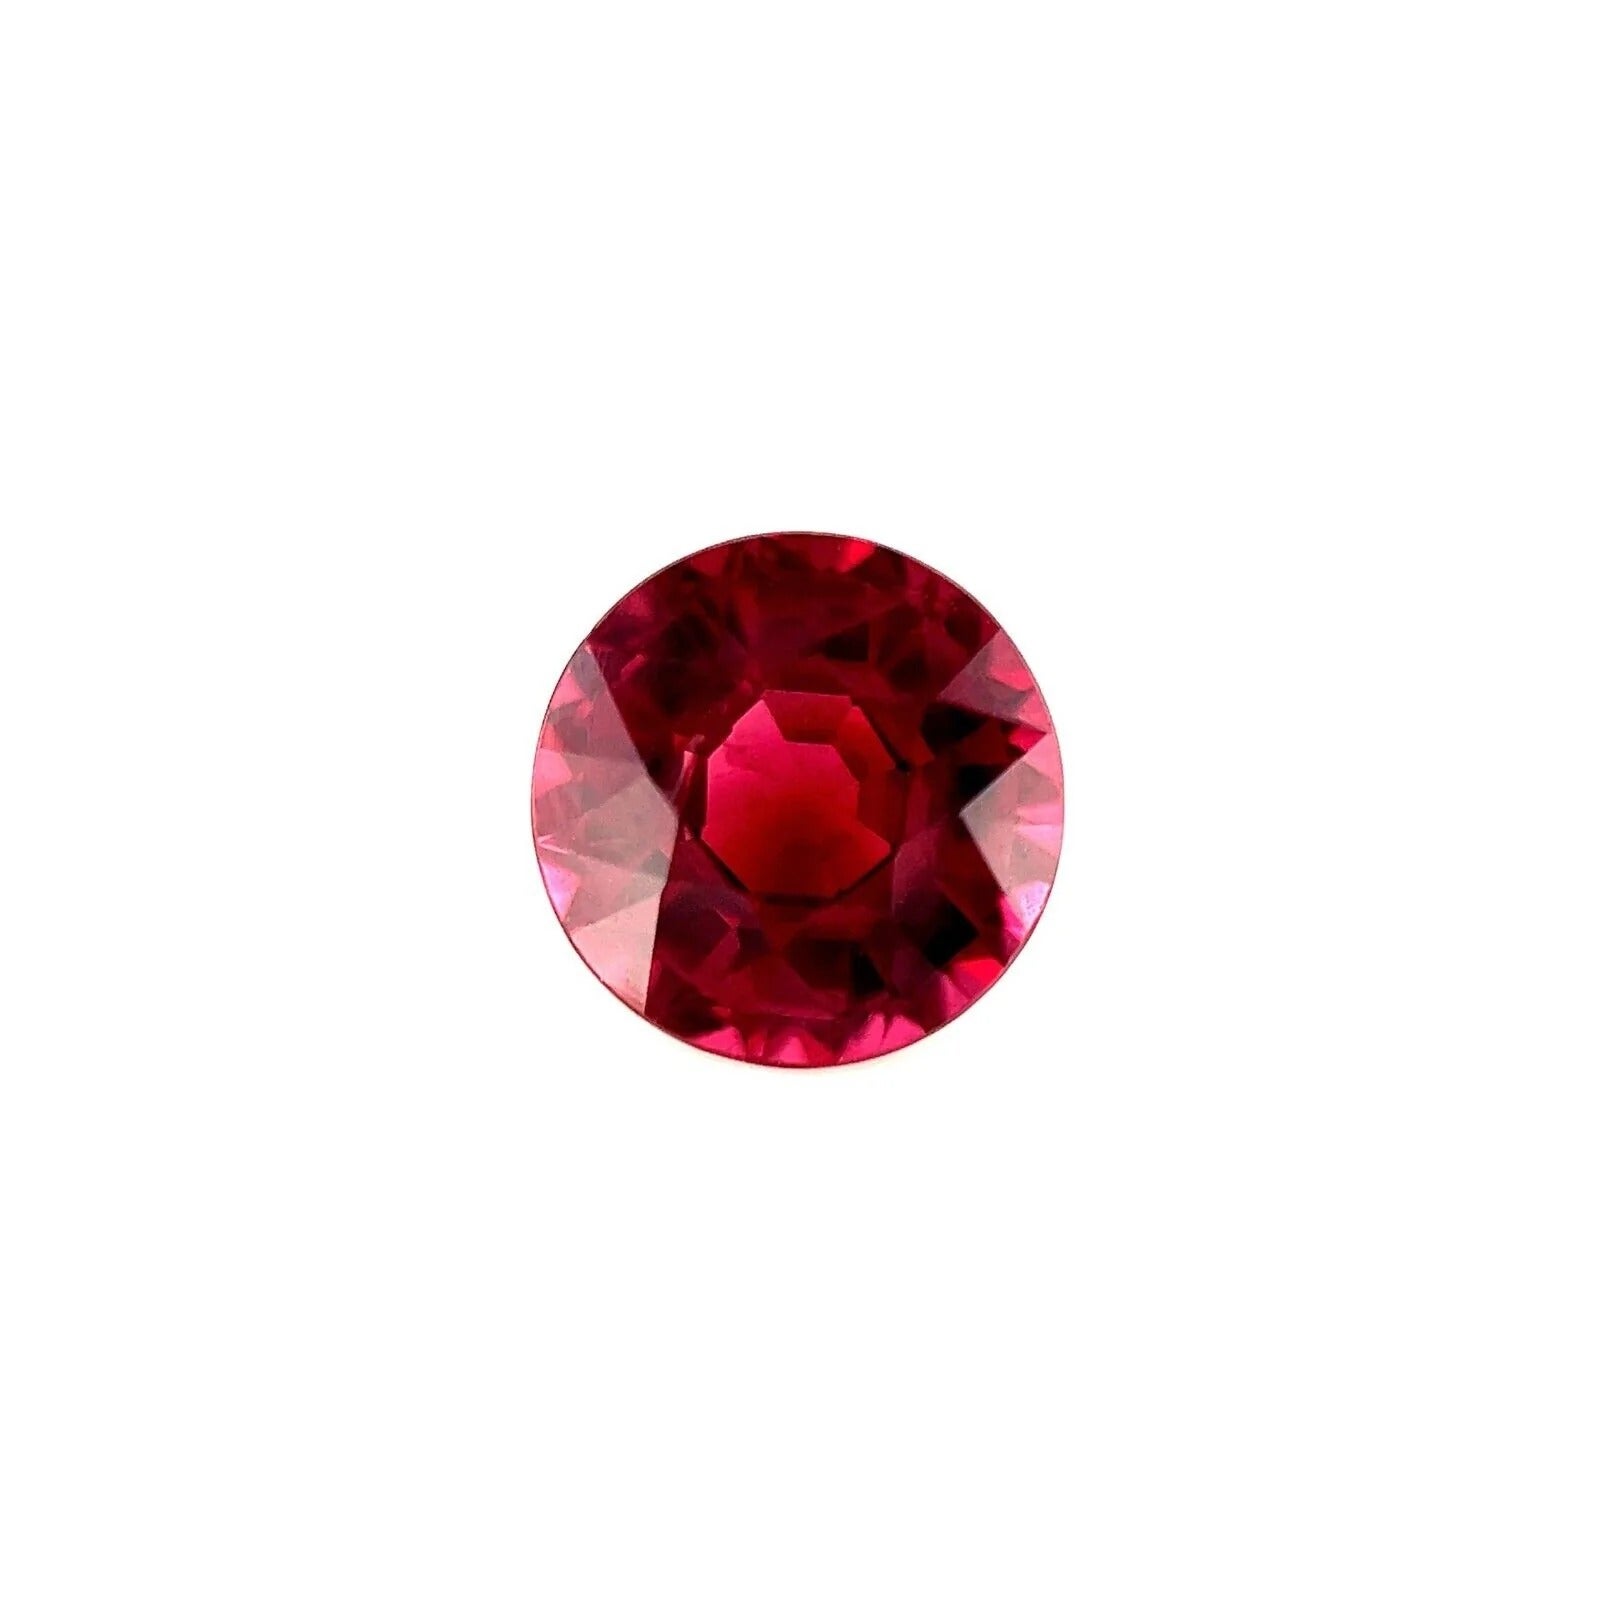 Fine pierre précieuse non sertie de 2,45 carats, grenat rhodolite rose vif, taille ronde et diamants de 7,8 mm